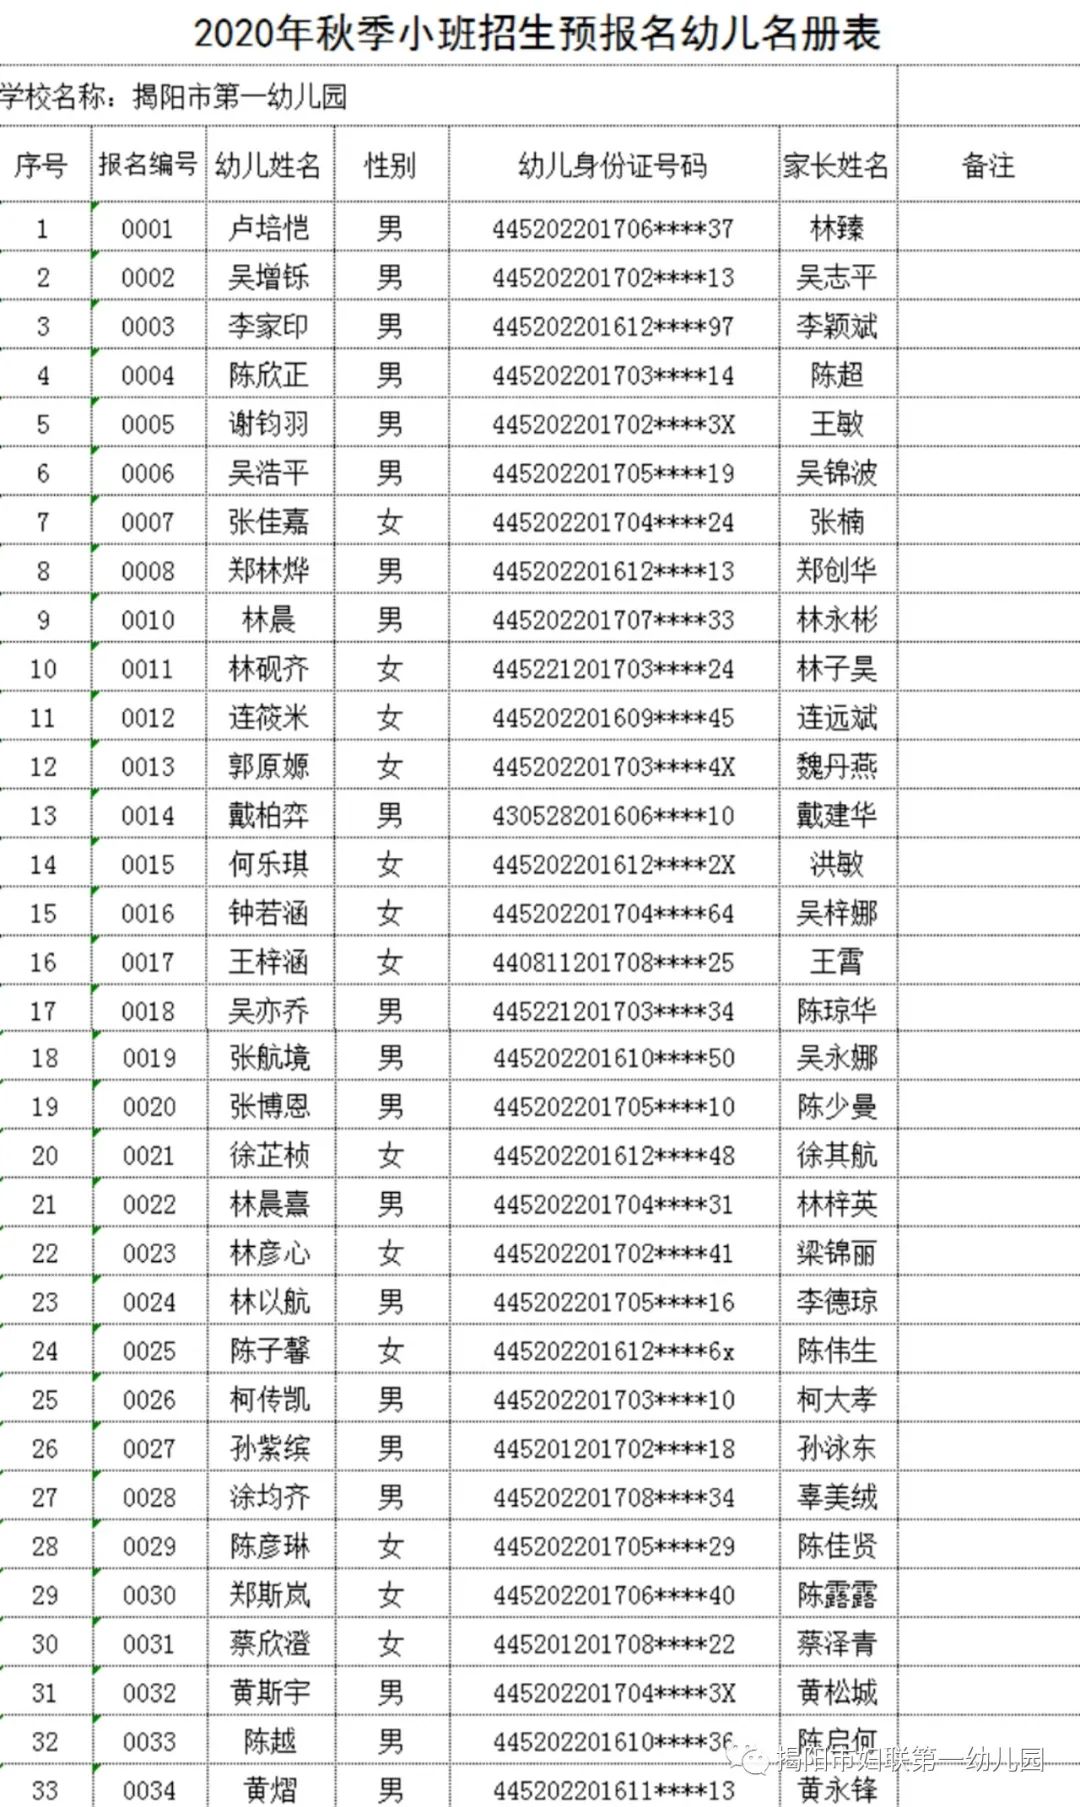 揭阳市第一幼儿园2020年秋季小班招生 预报名幼儿名单公布